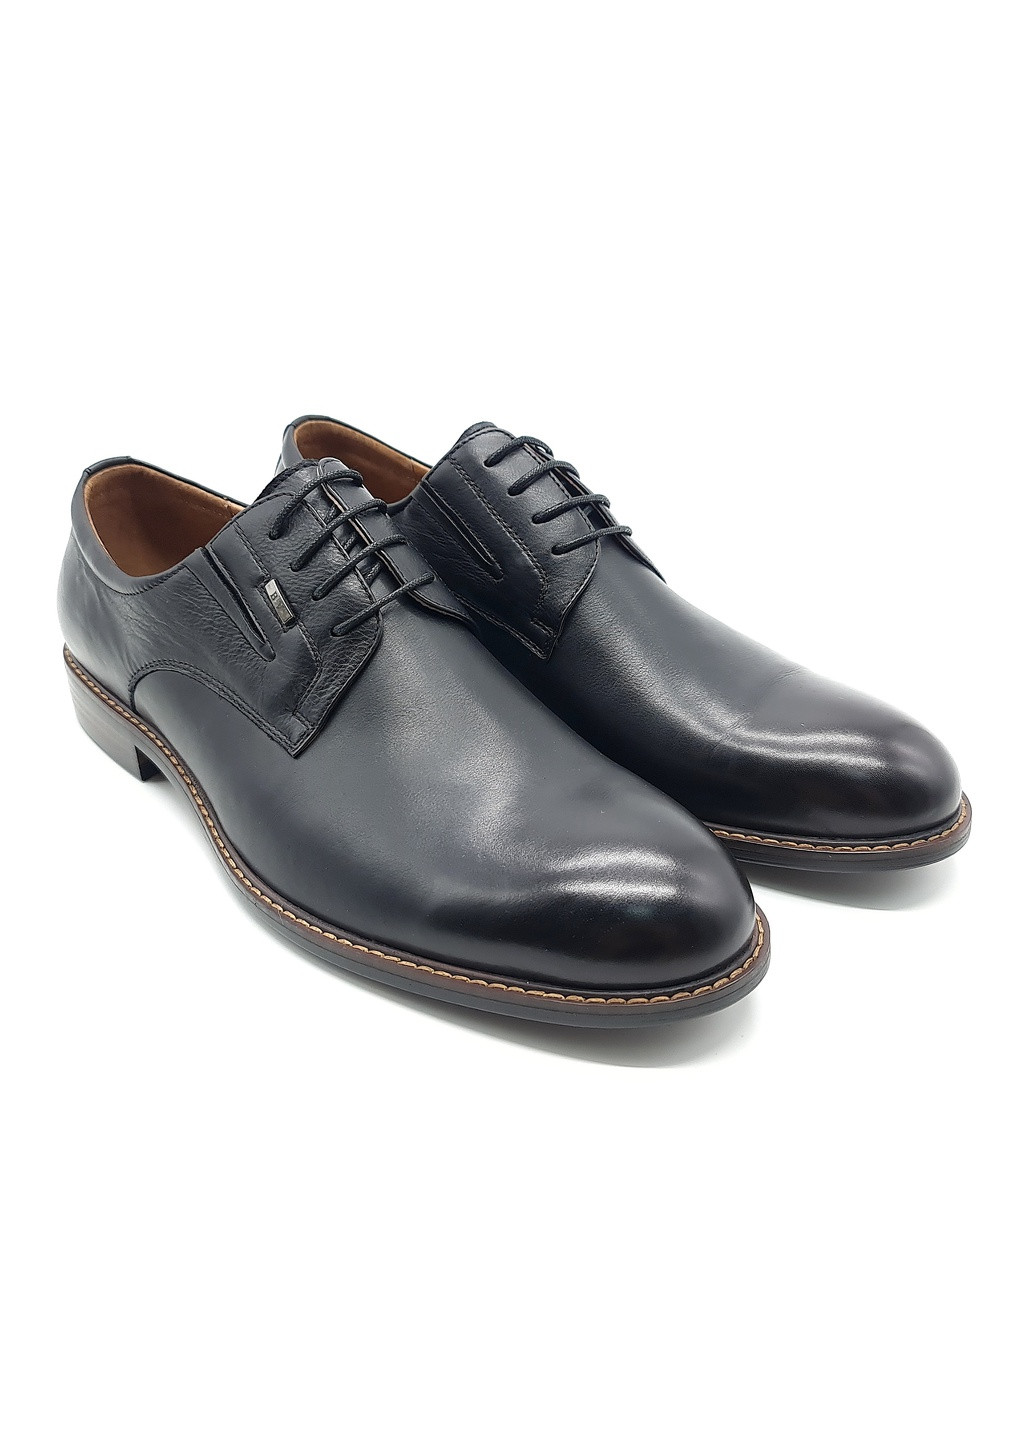 Осенние женские ботинки черные кожаные bv-19-7 25,5 см (р) Boss Victori